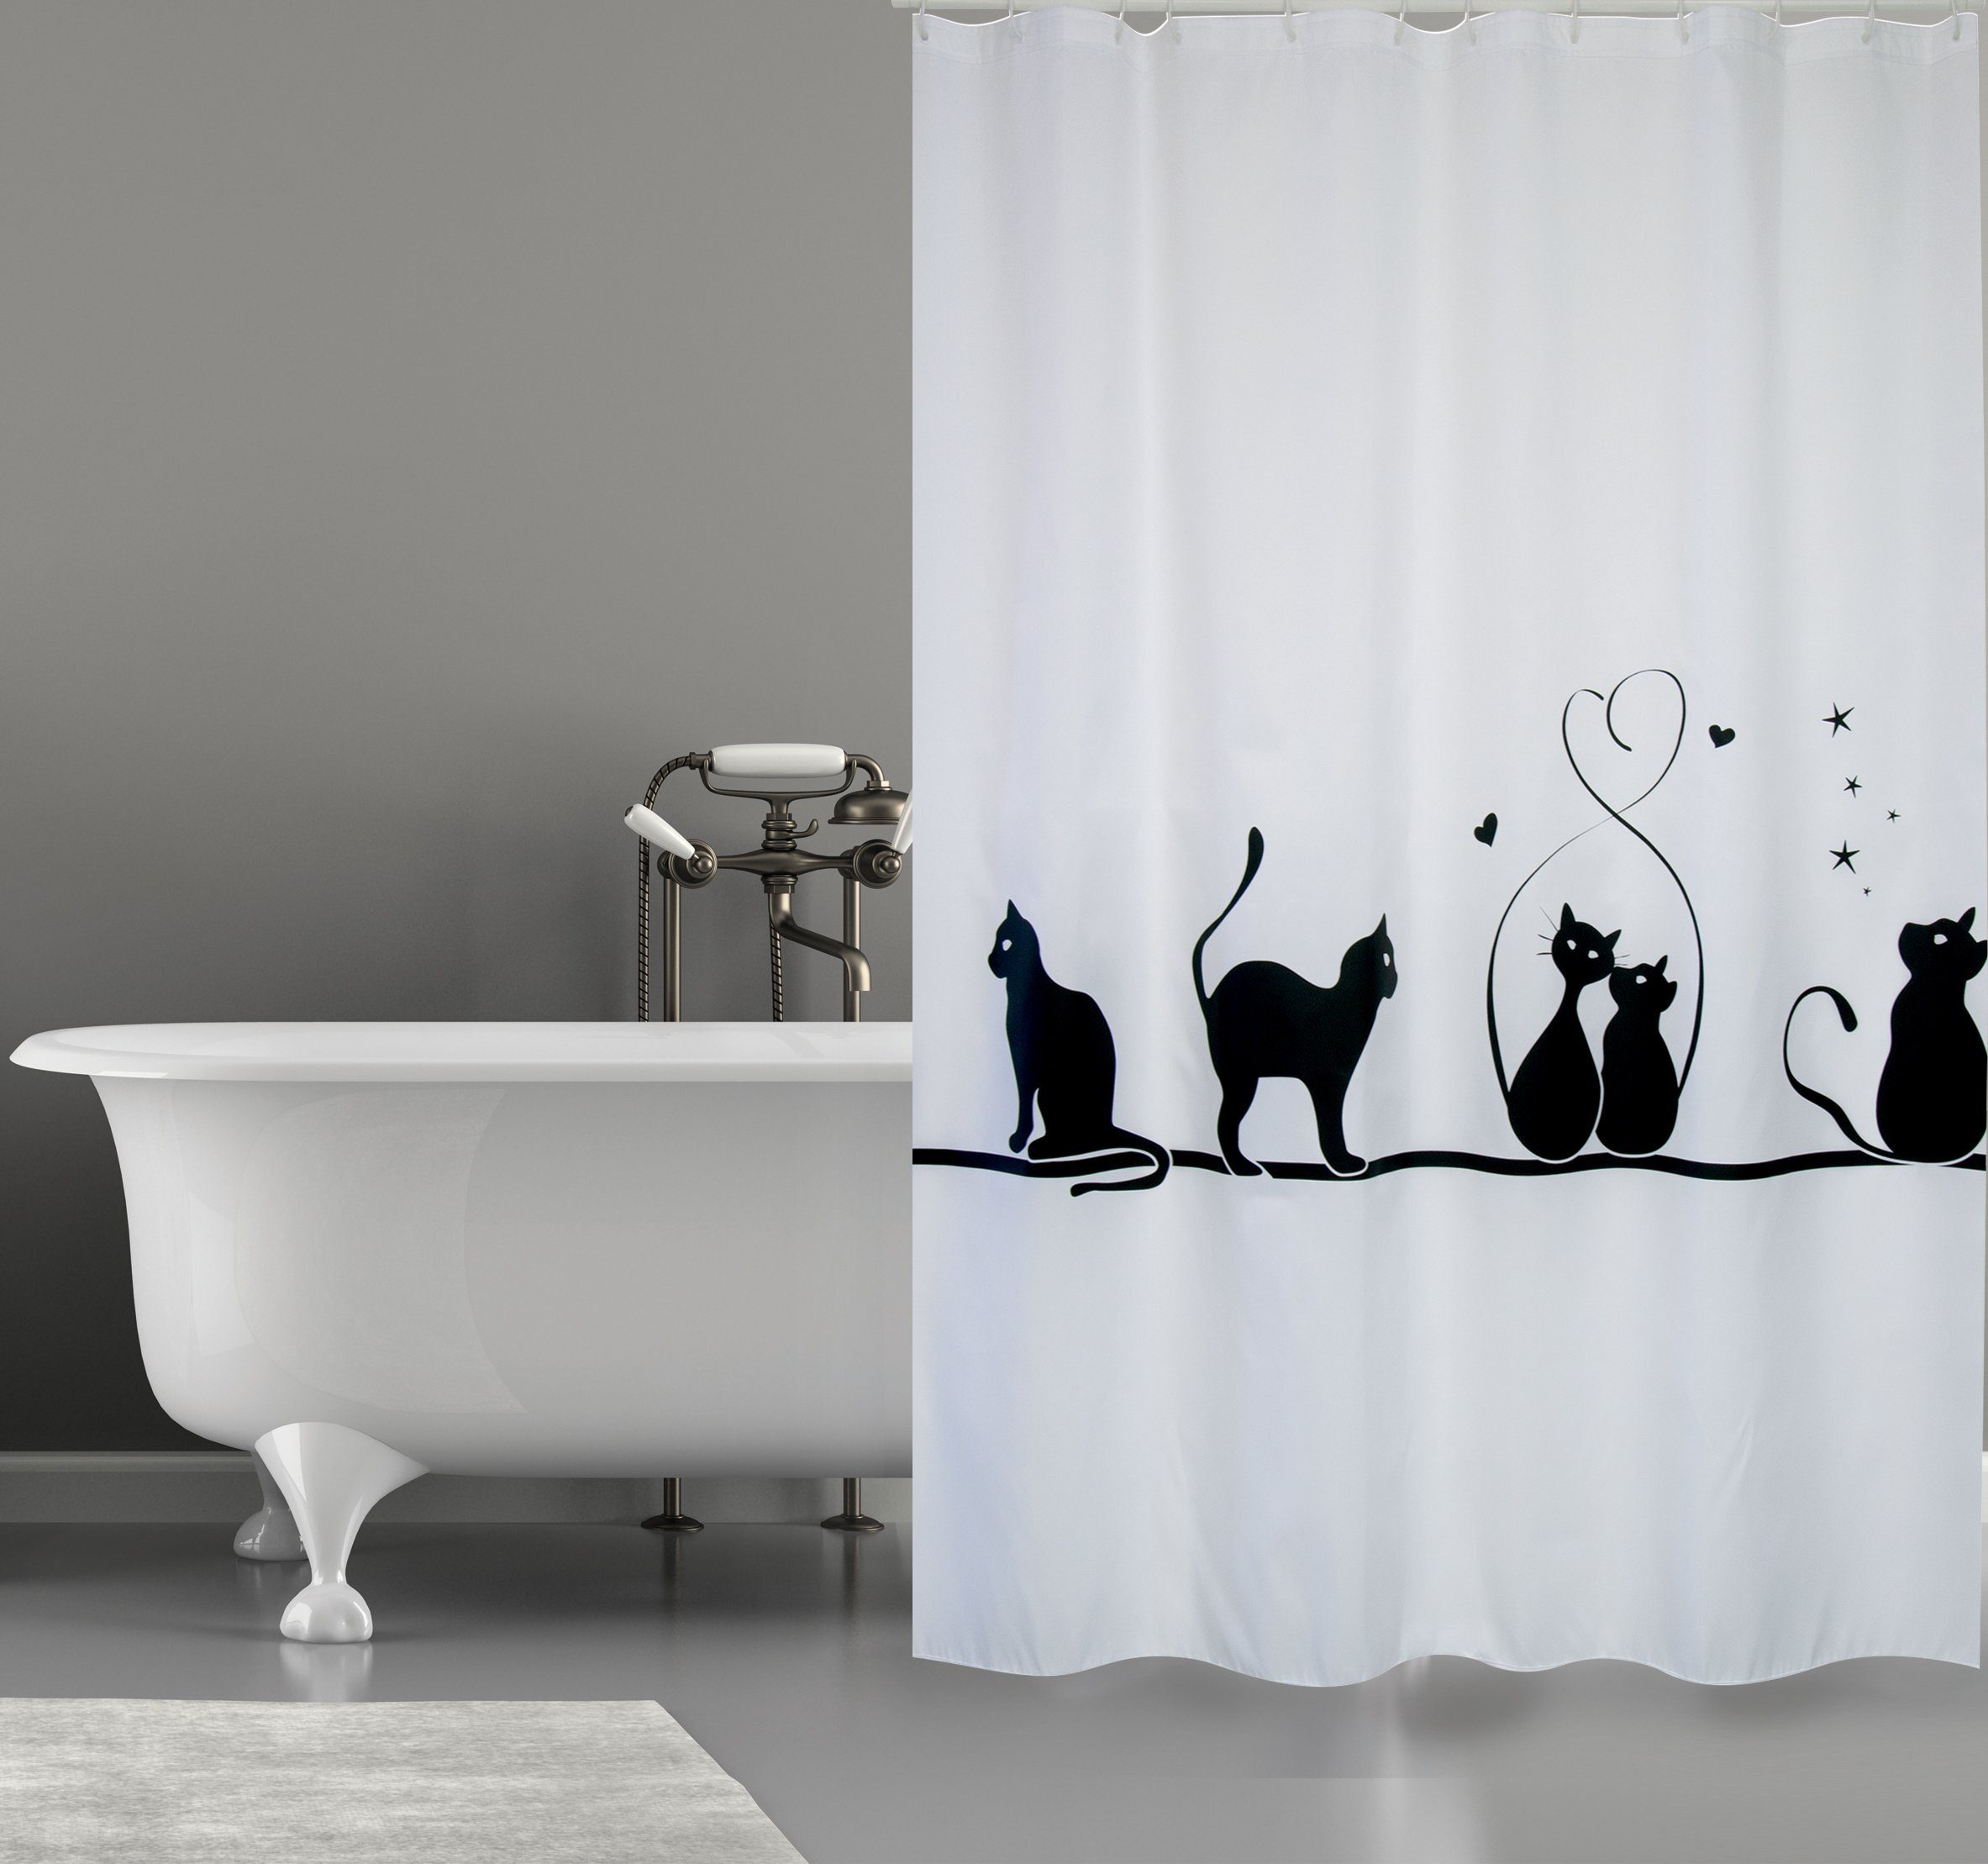 MSV Duschvorhang »CAT« Breite 180 cm, Premium Anti-Schimmel Textil- Duschvorhang, Polyester, 180x200 cm, waschbar, weiß-schwarz, Motiv "Cat"